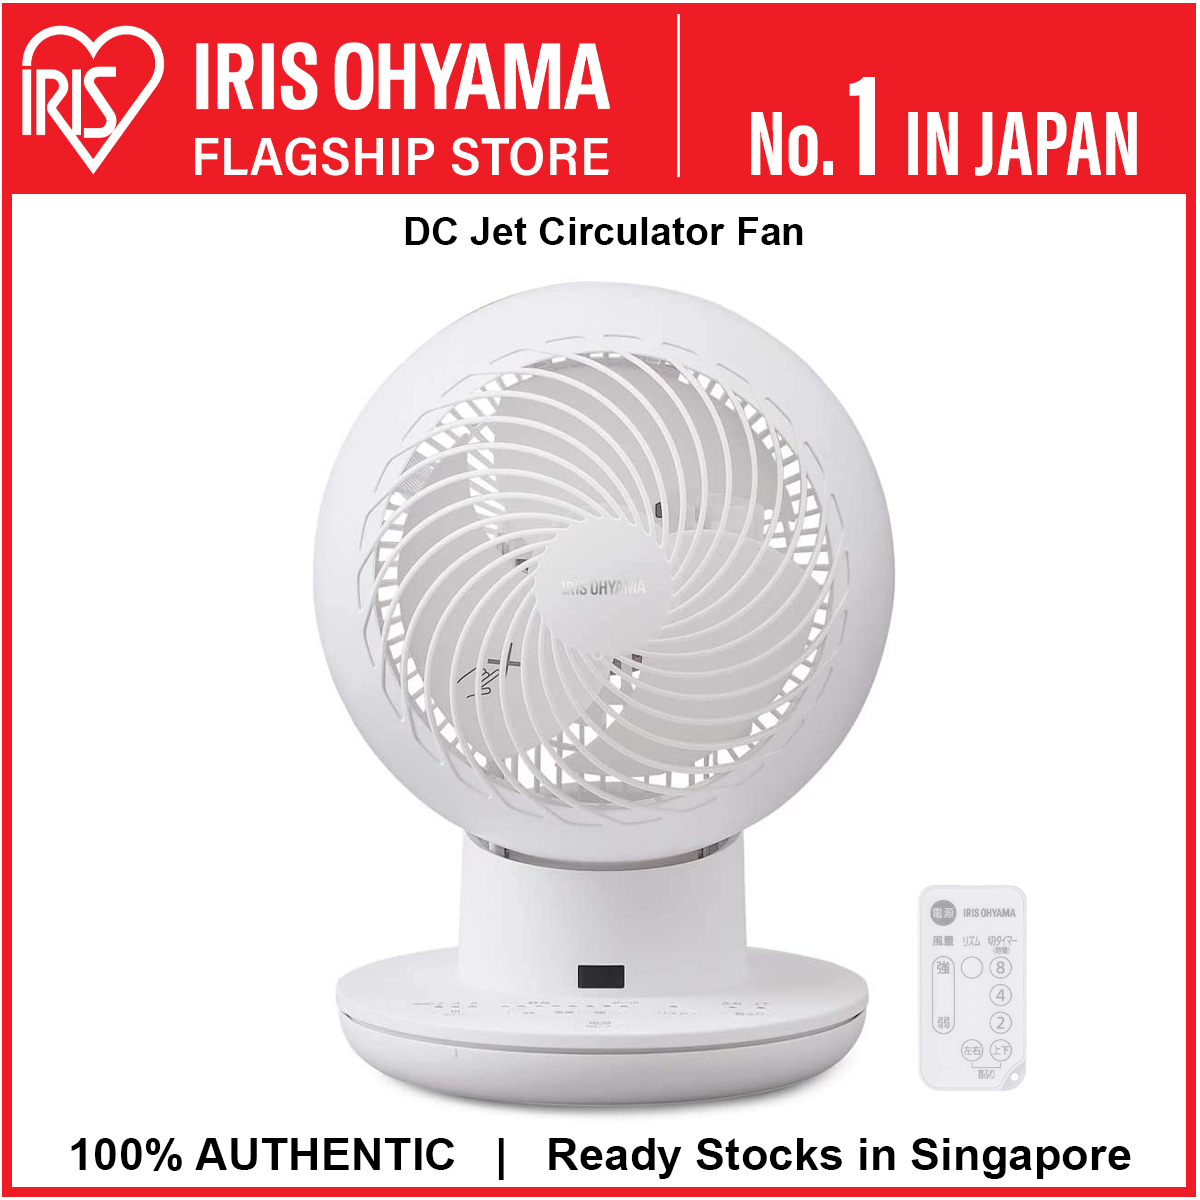 IRIS Ohyama PCF-MKM15 Table Top Japan No.1 Air Circulator Fan at